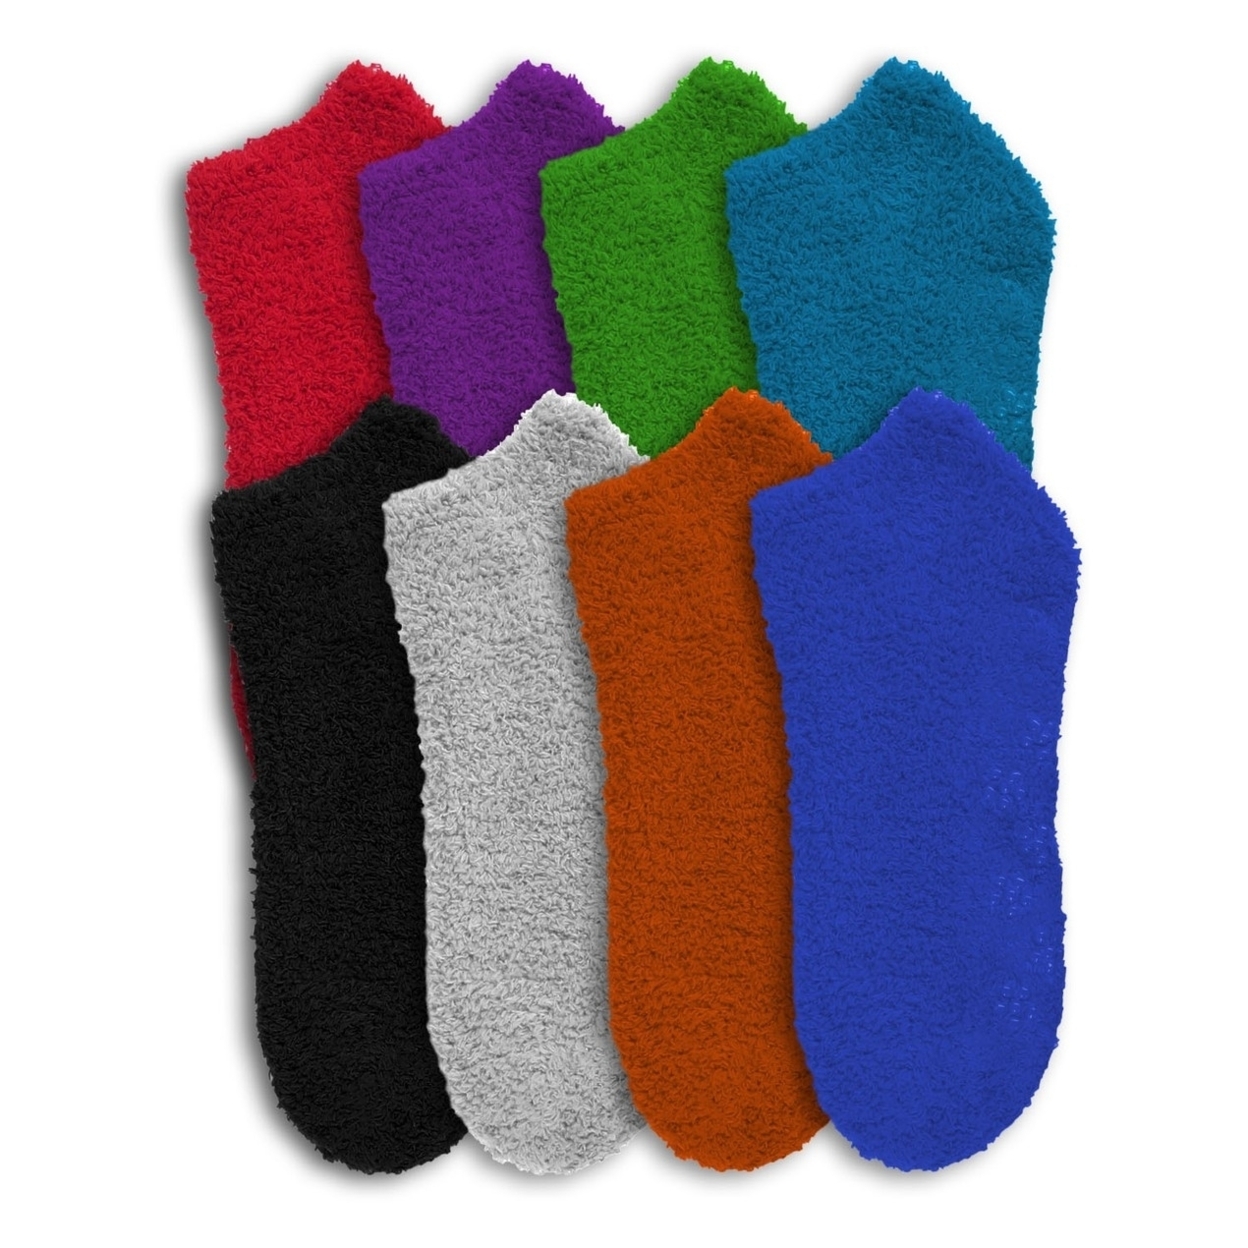 8-Pairs: Ultra Soft Super Plushy Women's Cozy Fuzzy Socks - Stripes